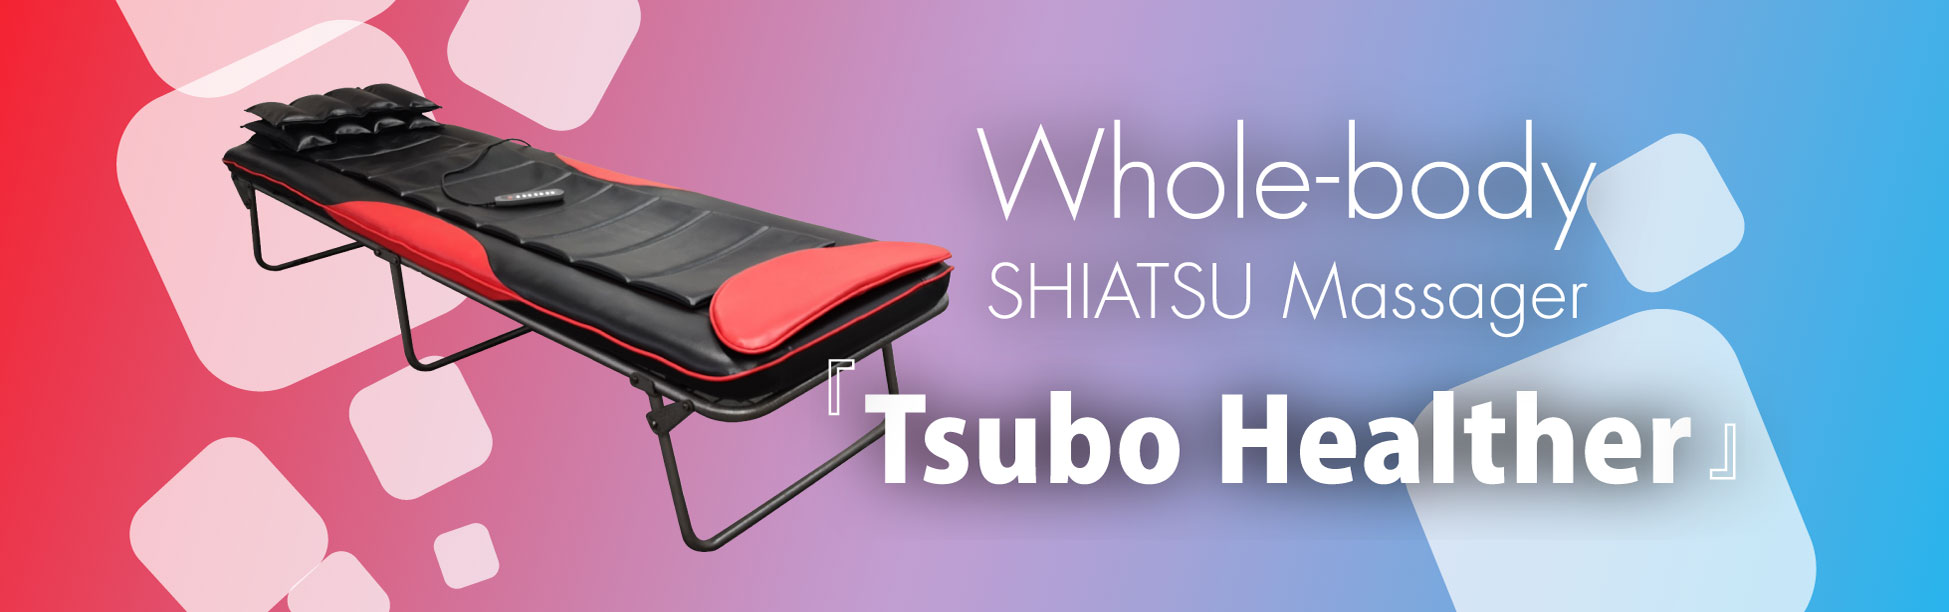 Whole-body SHIATSU Massager Tsubo Helther